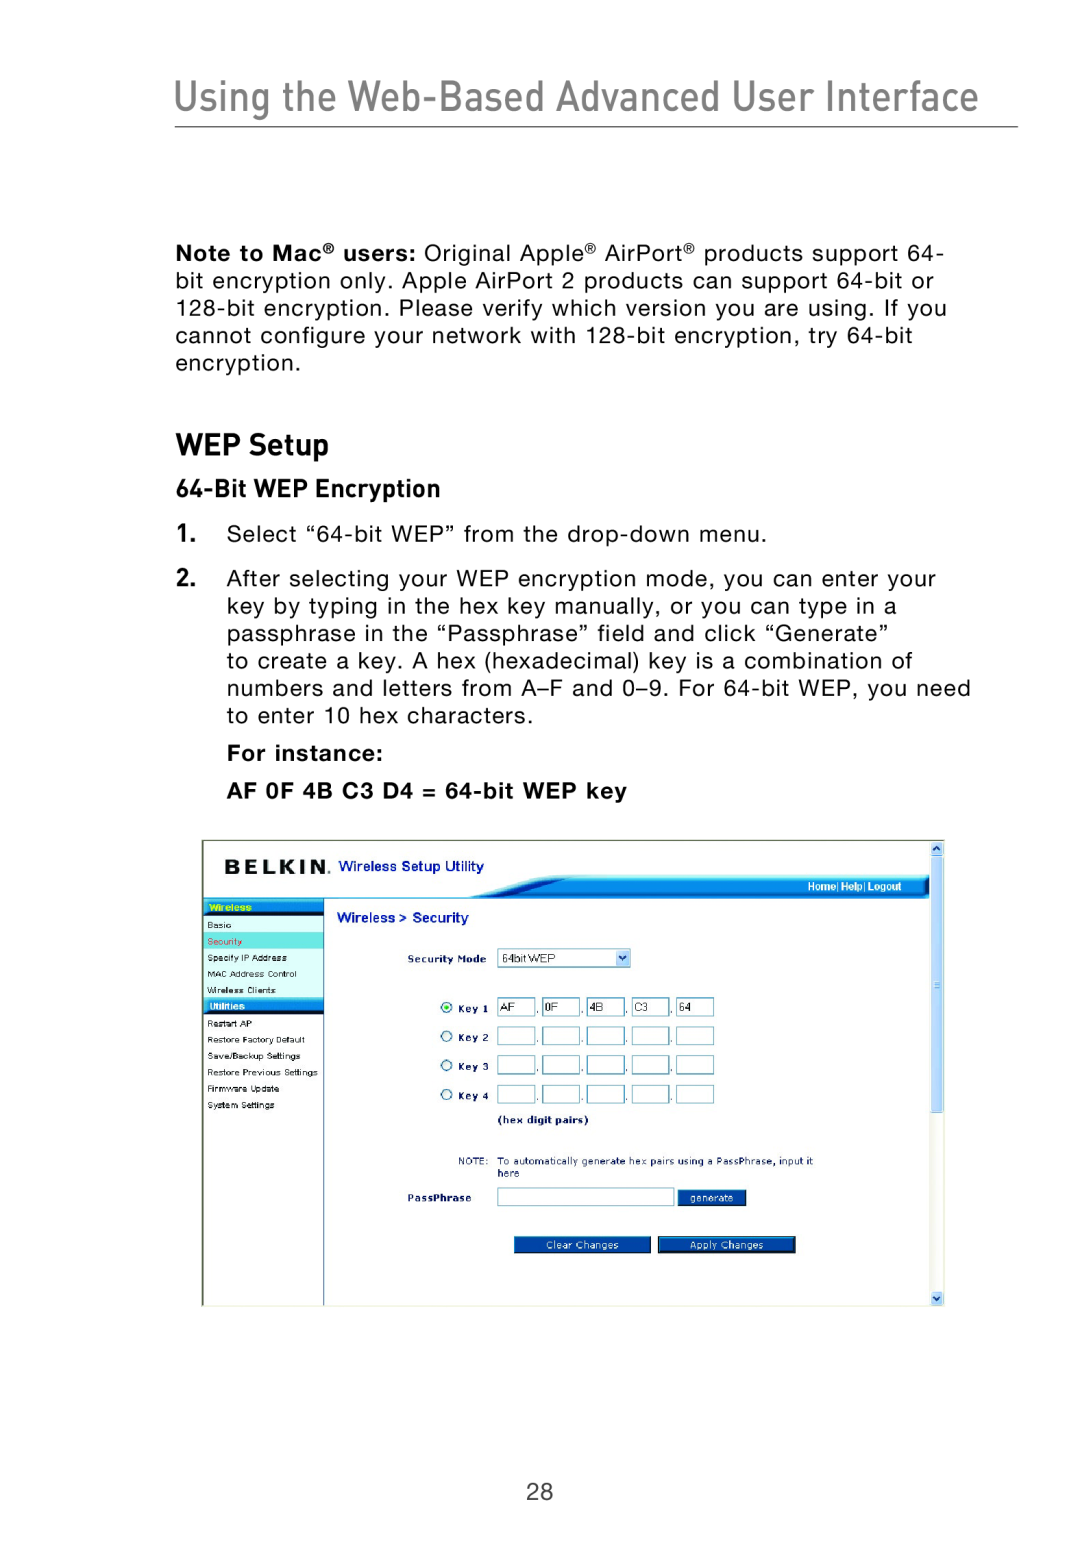 Belkin Range Extender/ Access Point manual WEP Setup, Bit WEP Encryption, For instance AF 0F 4B C3 D4 = 64-bit WEP key 